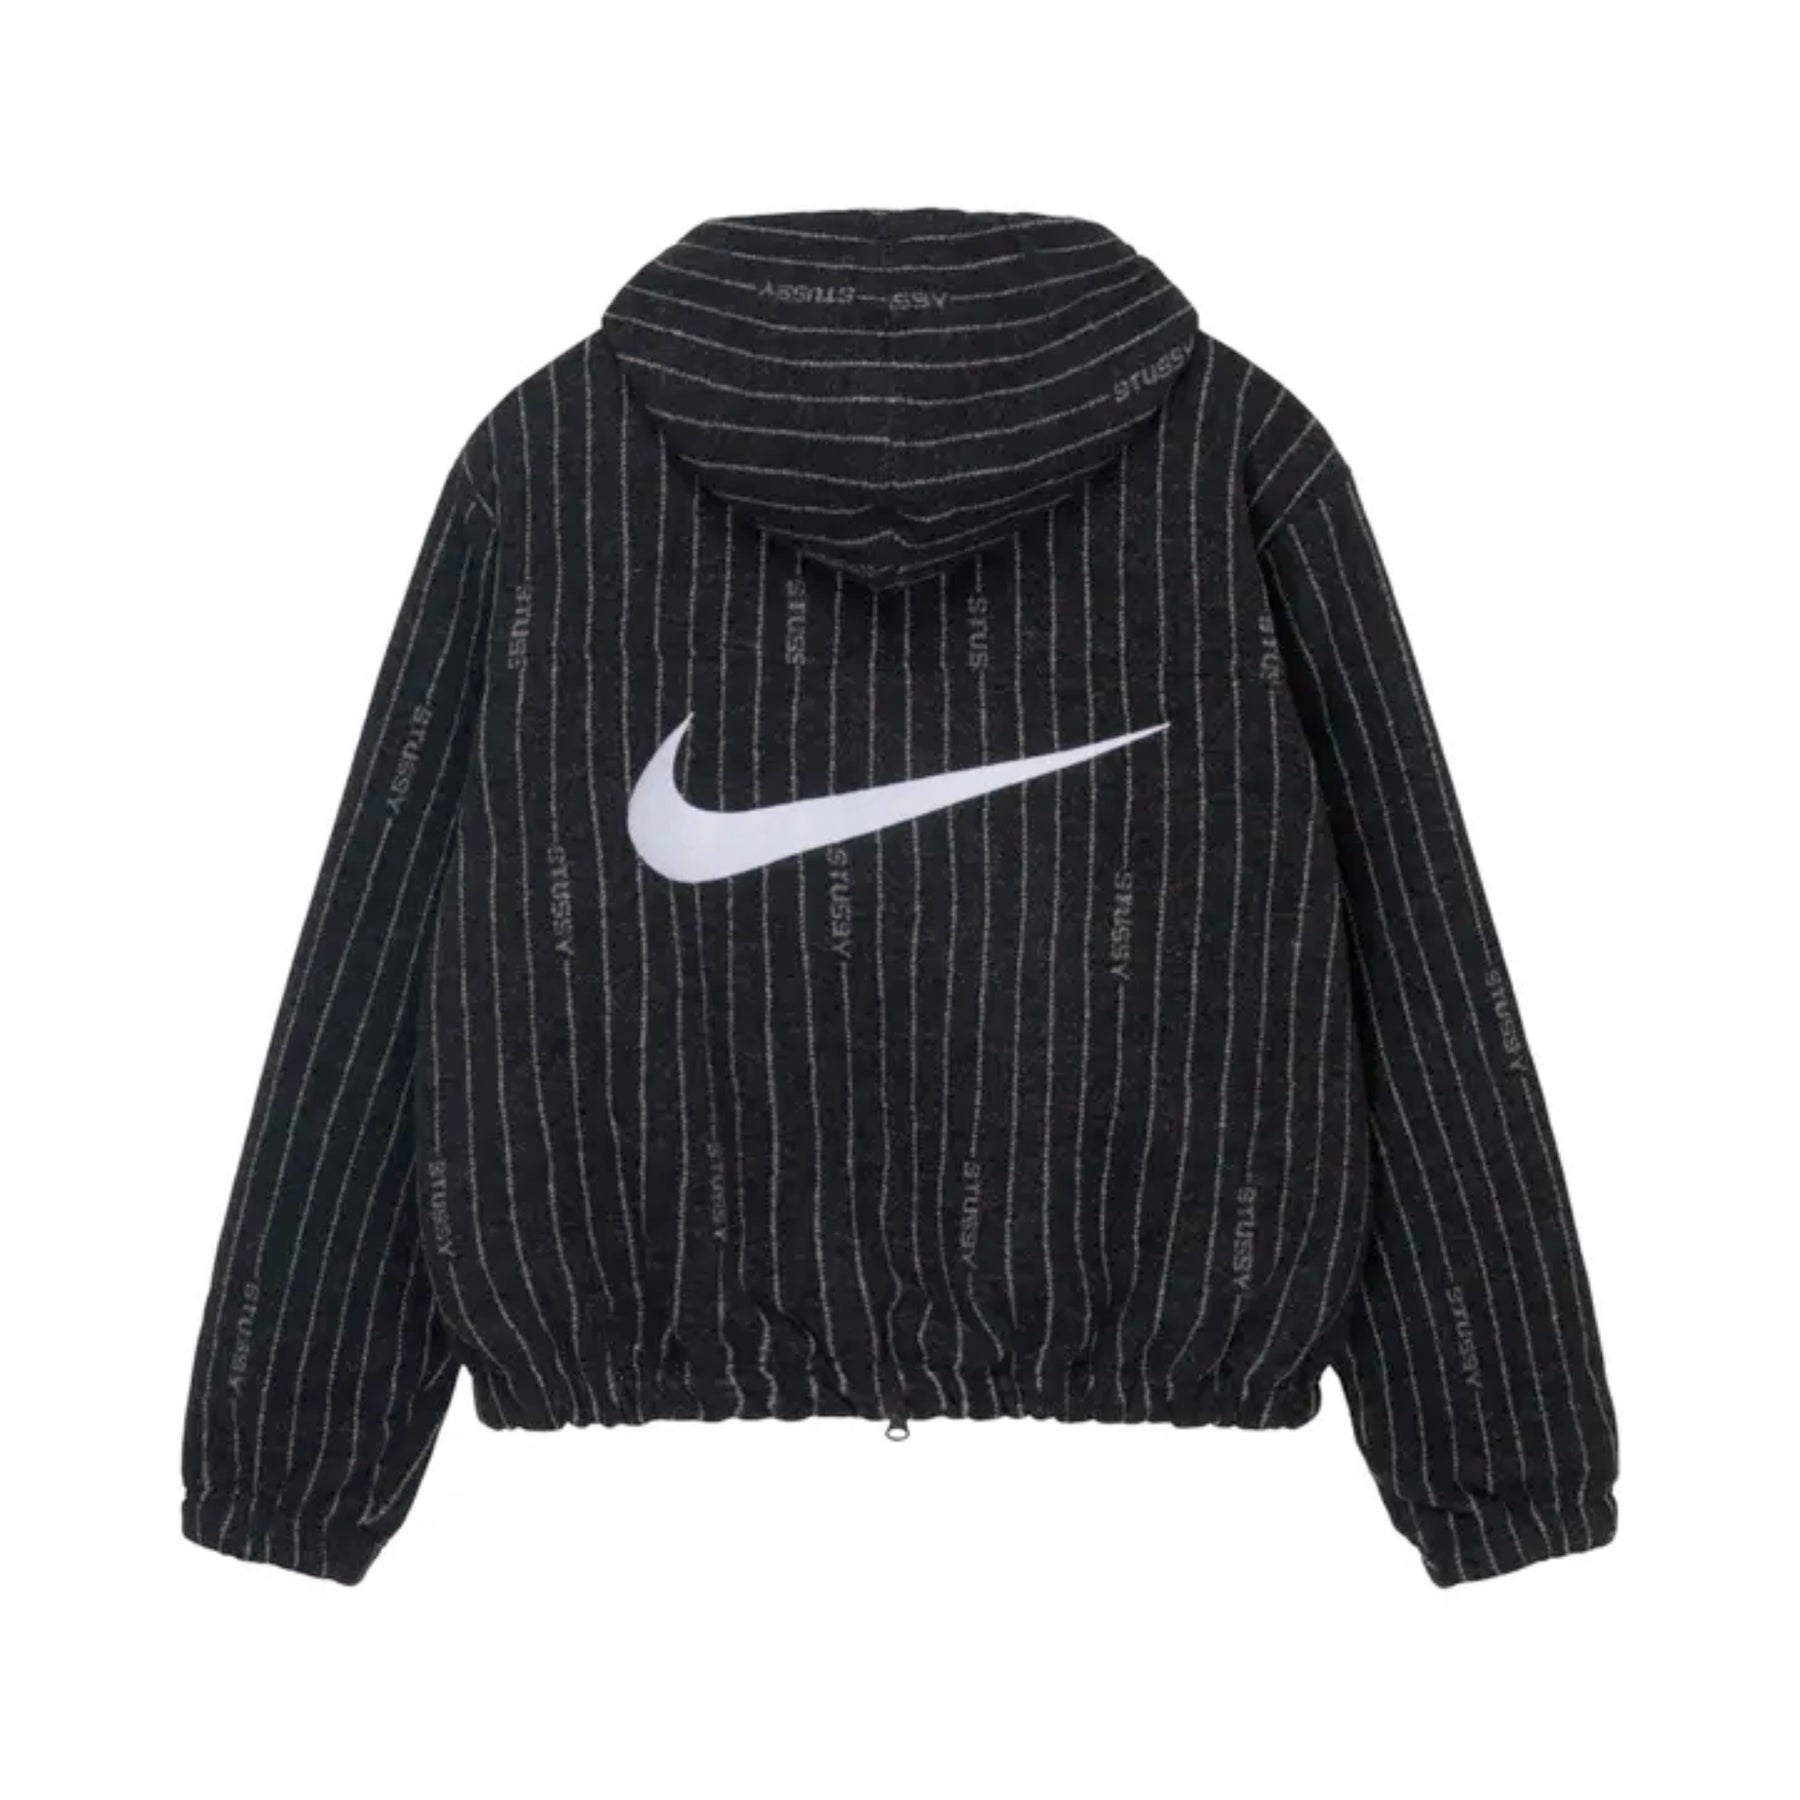 Nike x Stüssy Striped Wool Jacket "Black" - street-bill.dk